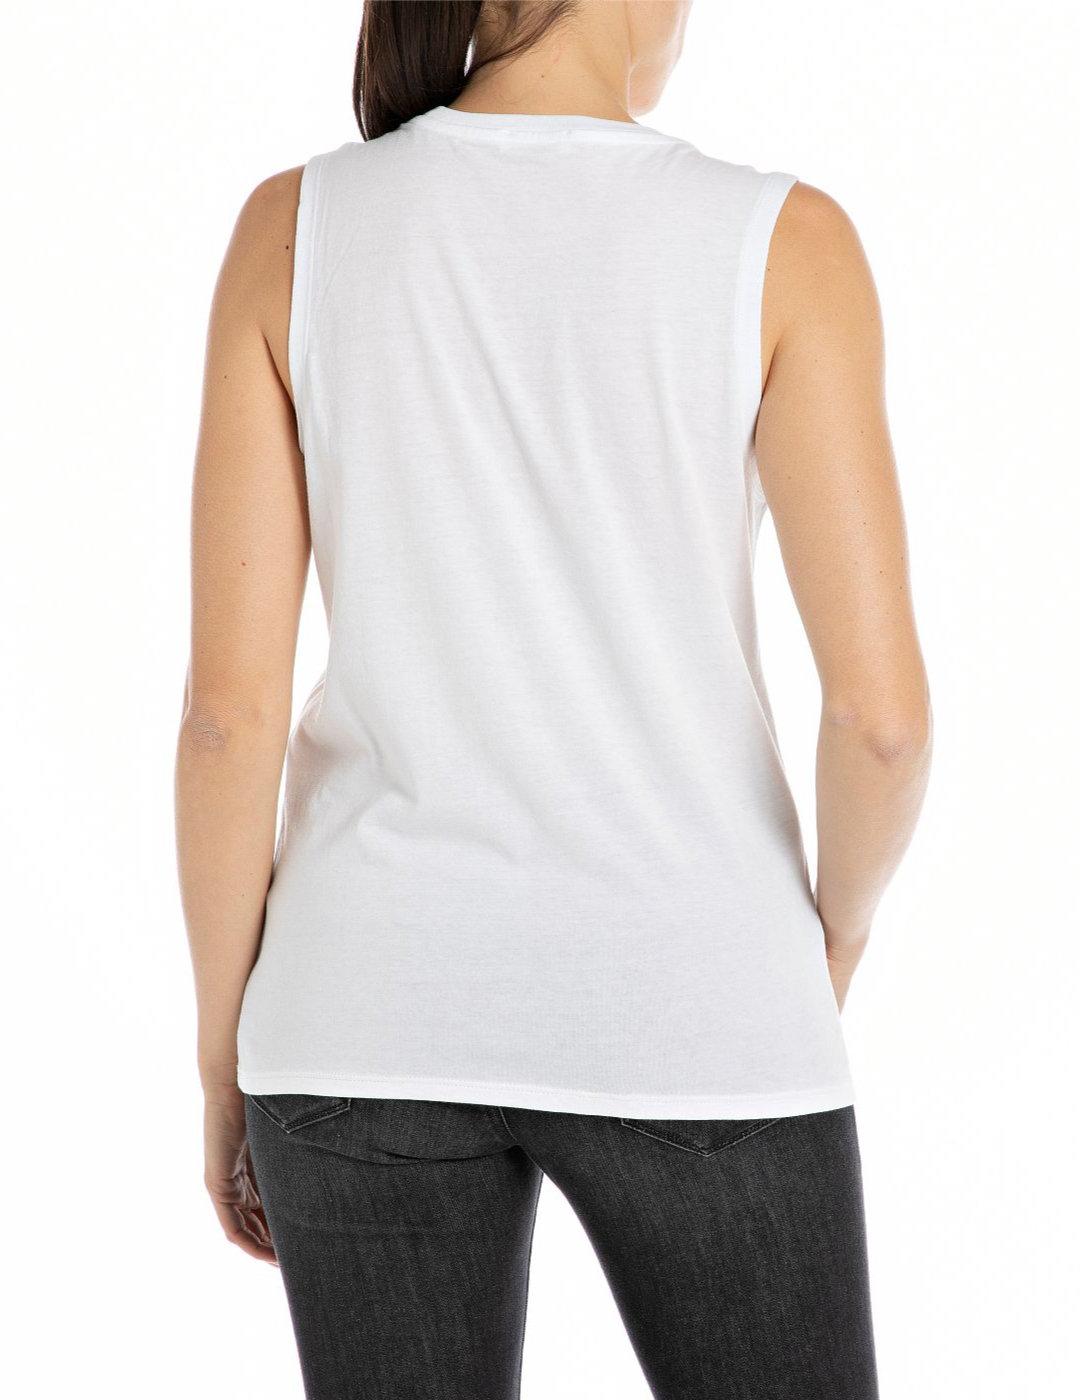 Camiseta Replay blanca con logo sin mangas para mujer